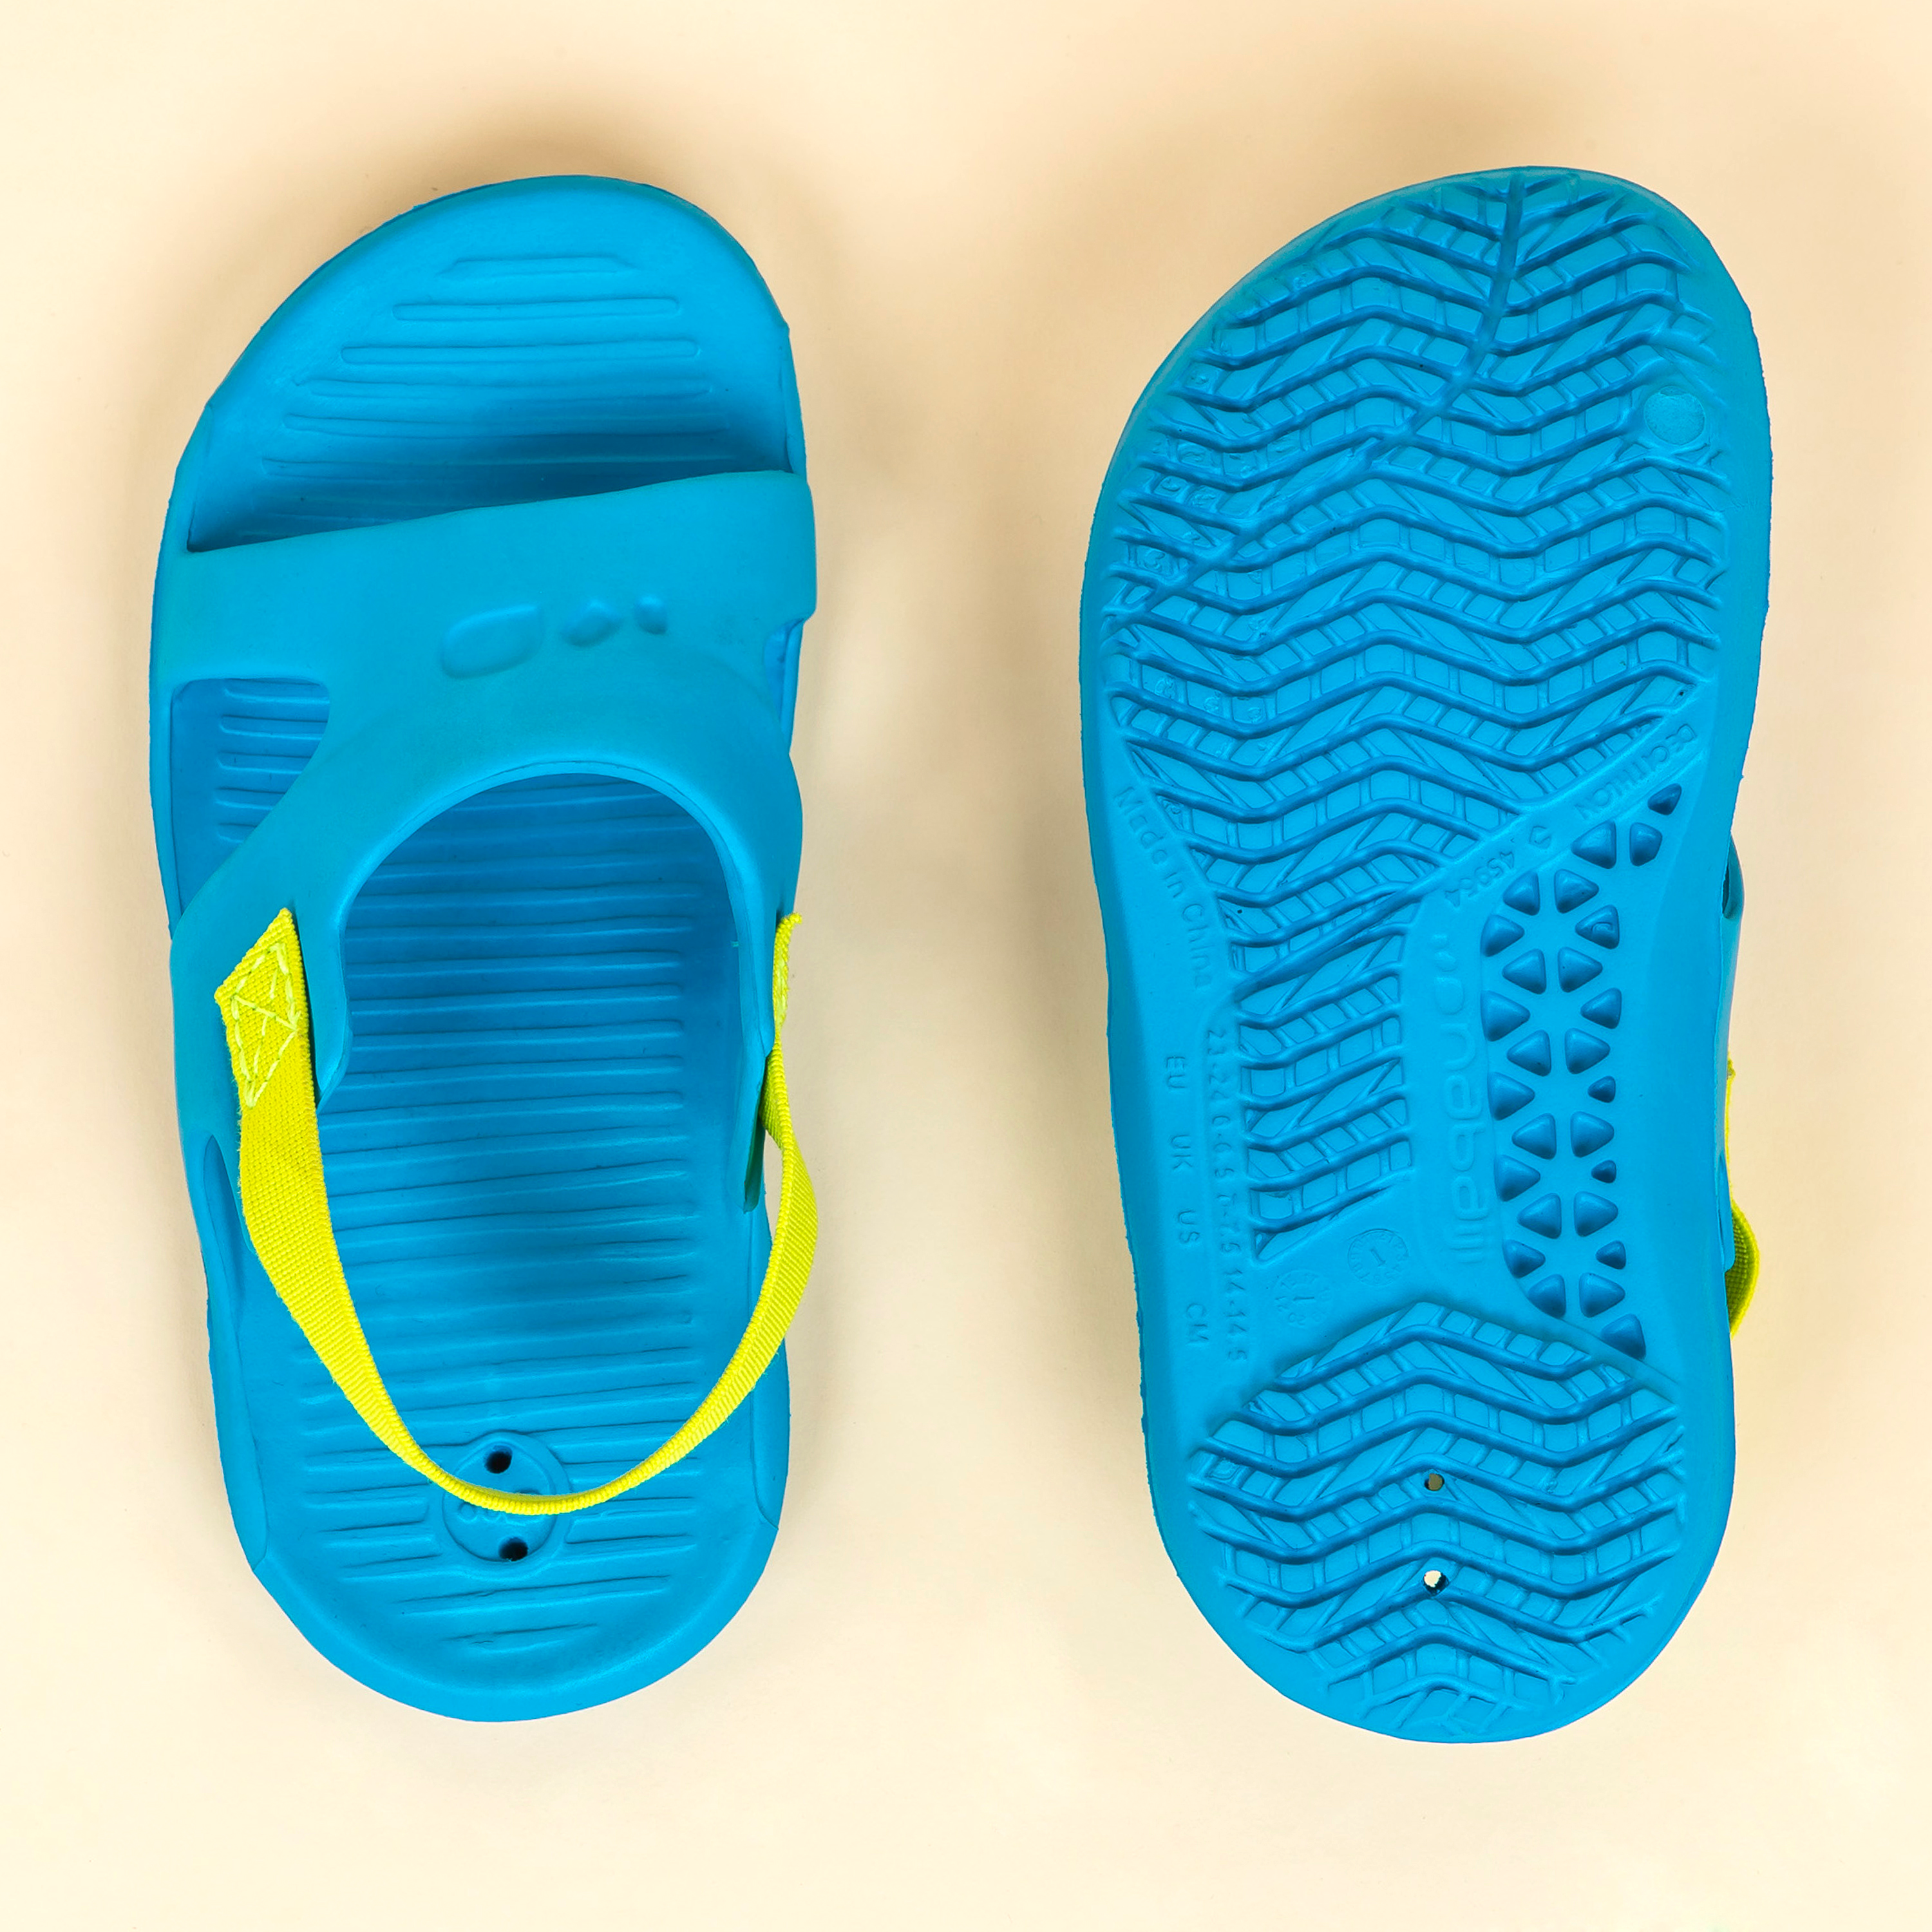 Chaussure Sandale Natation Bébé enfant bleu - Decathlon